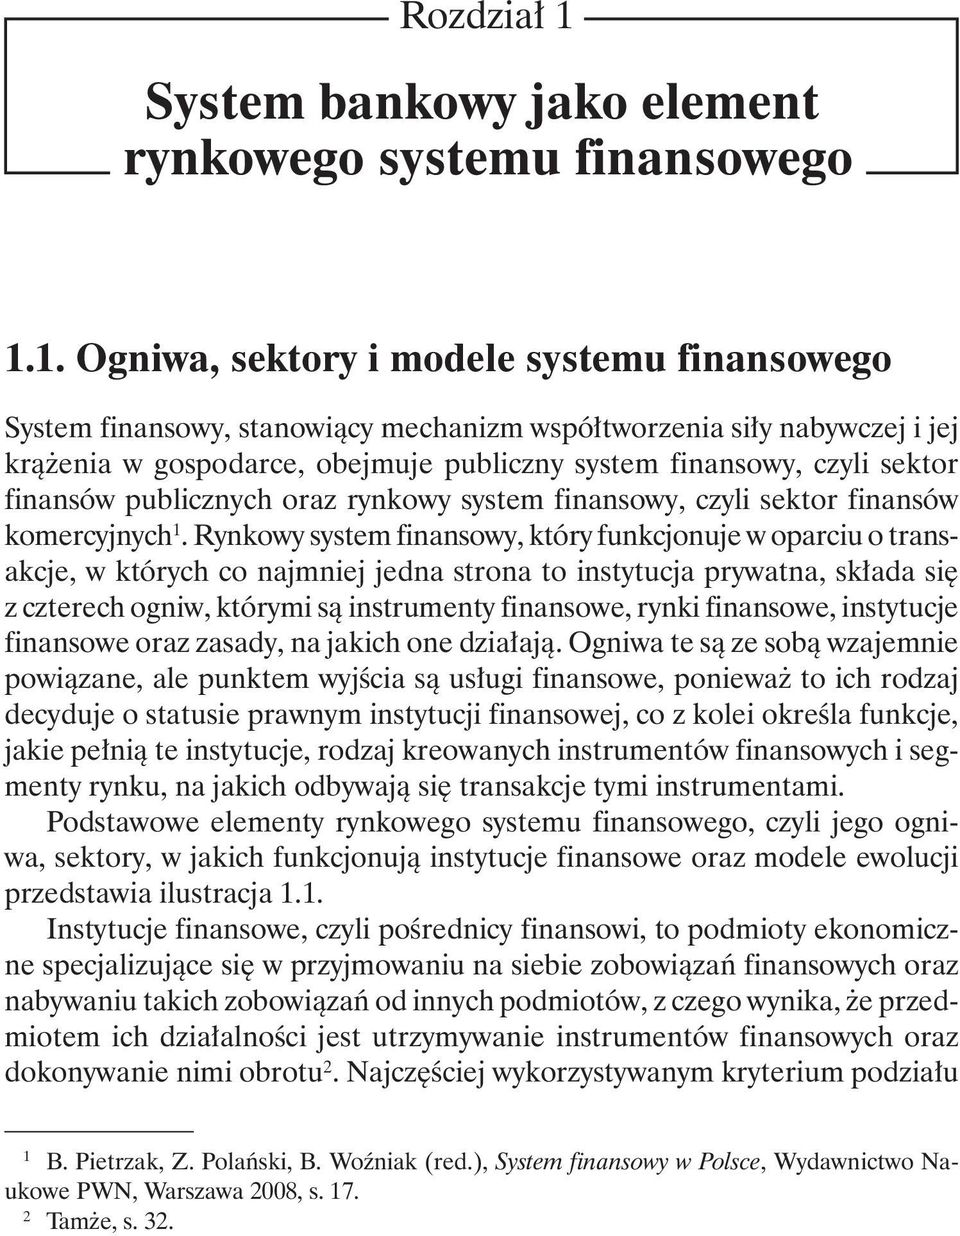 1. Ogniwa, sektory i modele systemu finansowego System finansowy, stanowiący mechanizm współtworzenia siły nabywczej i jej krążenia w gospodarce, obejmuje publiczny system finansowy, czyli sektor